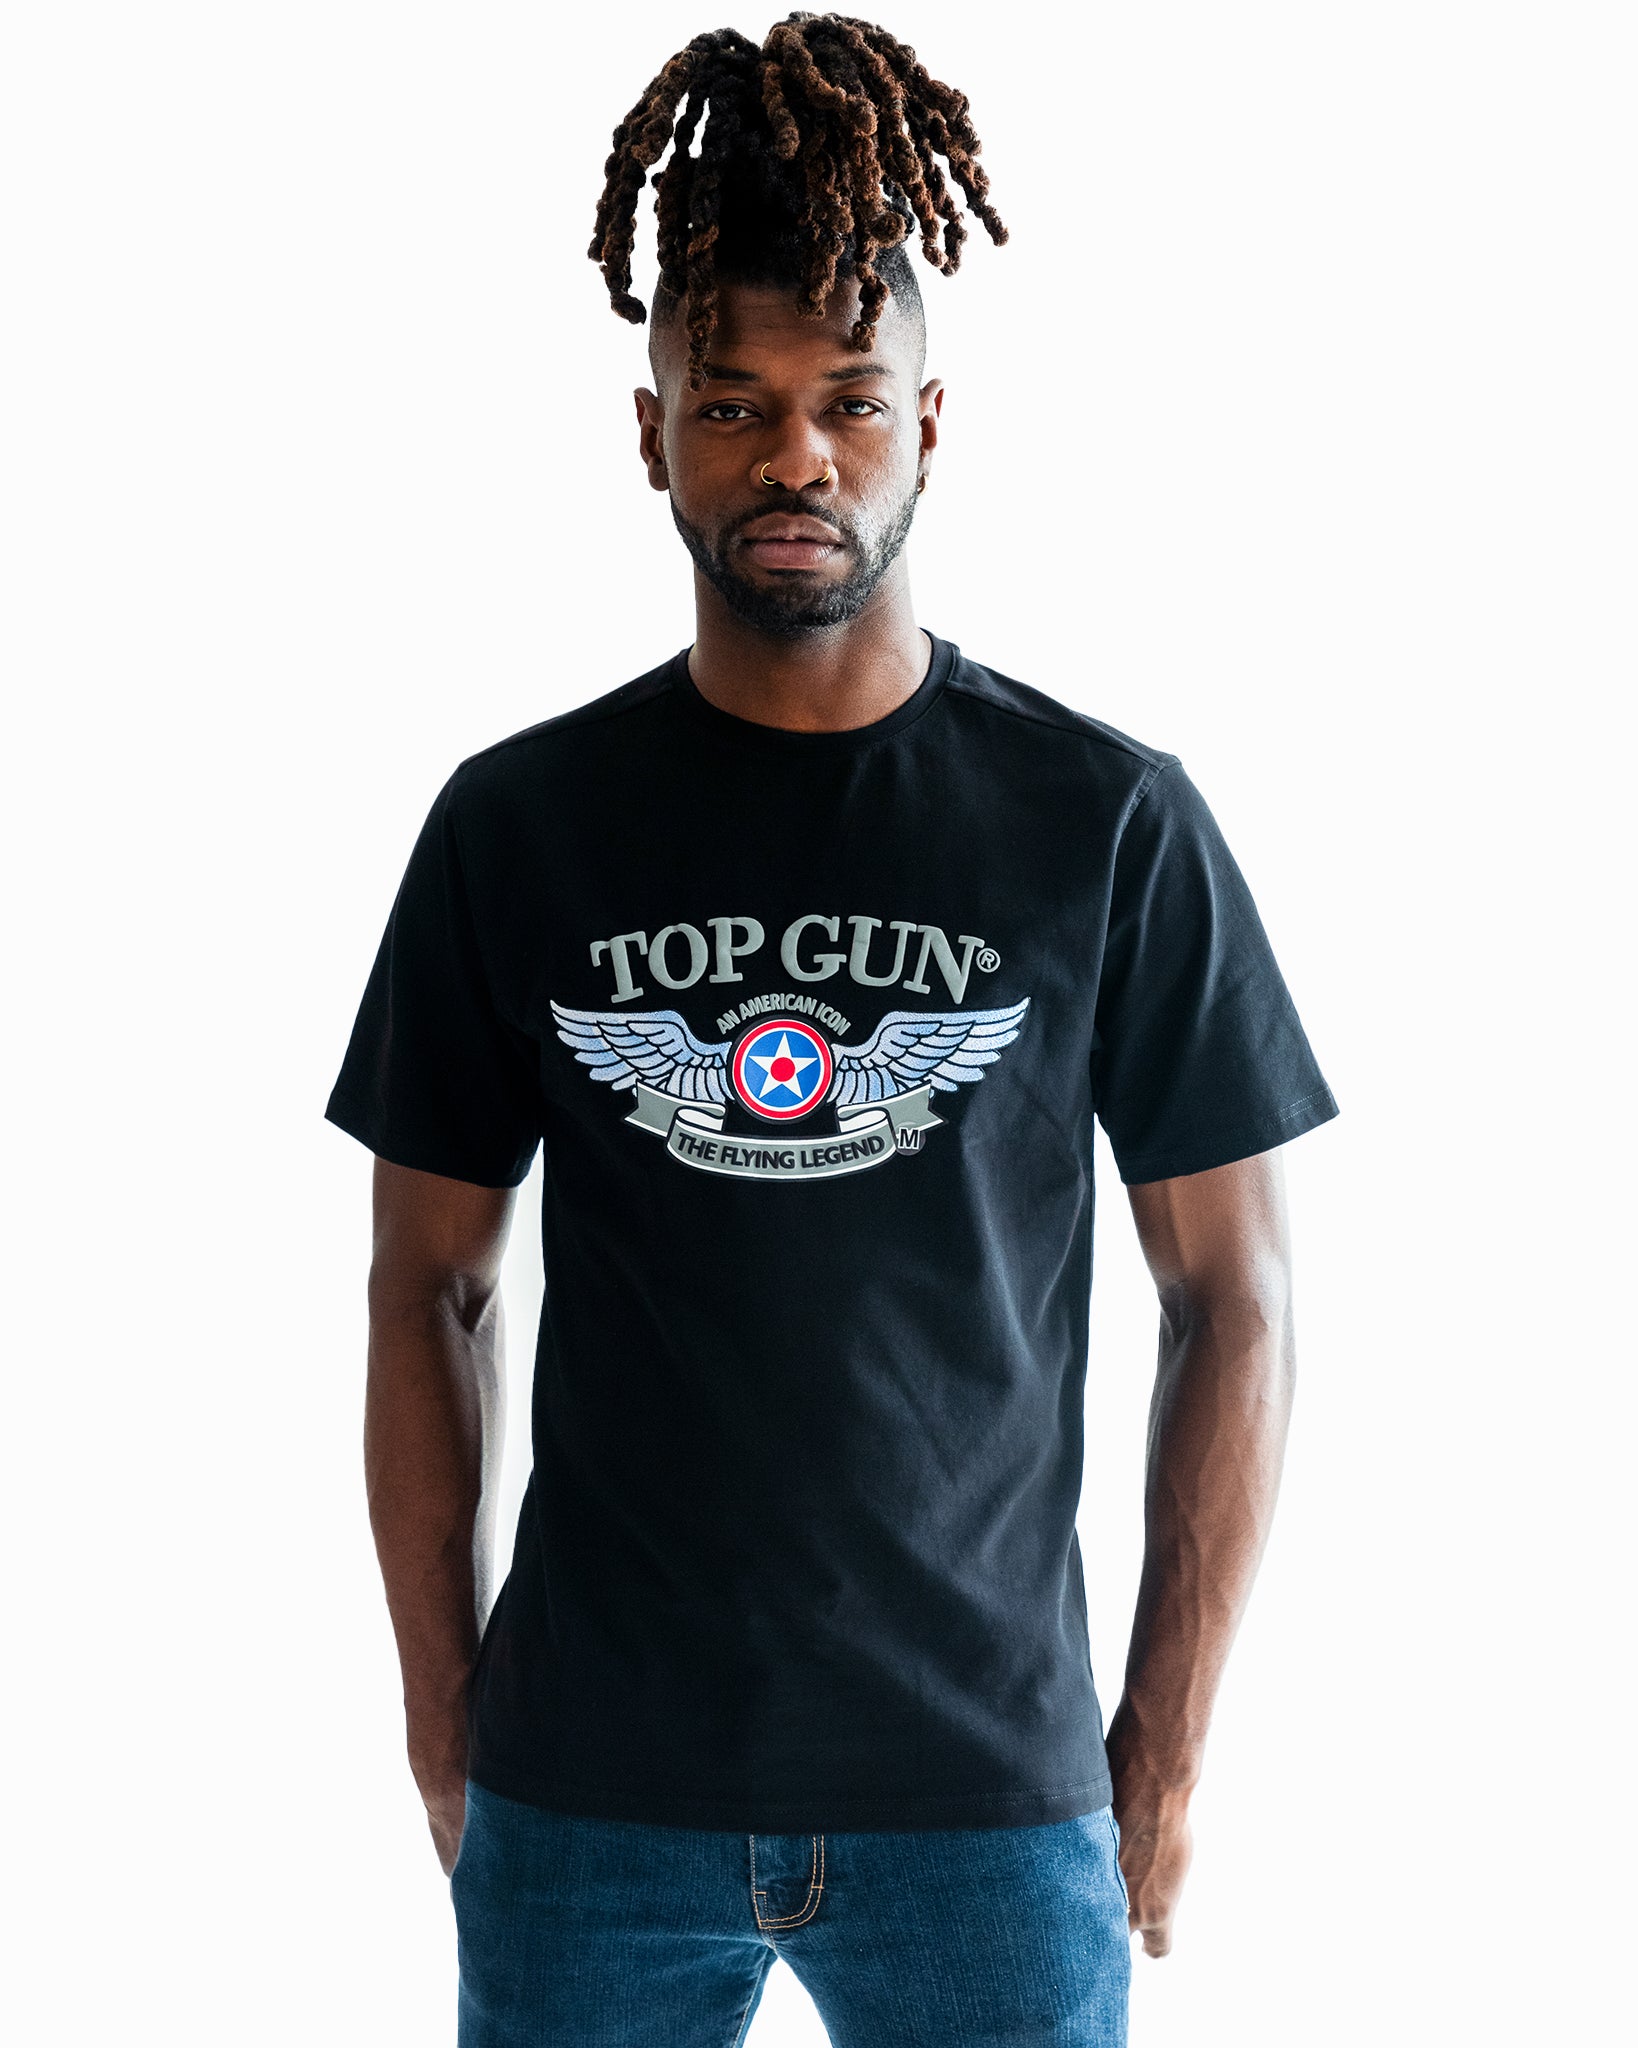 Men's Tees & T-Shirts | THE OFFICIAL TOP GUN STORE | Cotton Summer T-Shirts,  Best Men's Tees, top gun movie merchandise, Tees – Top Gun Store